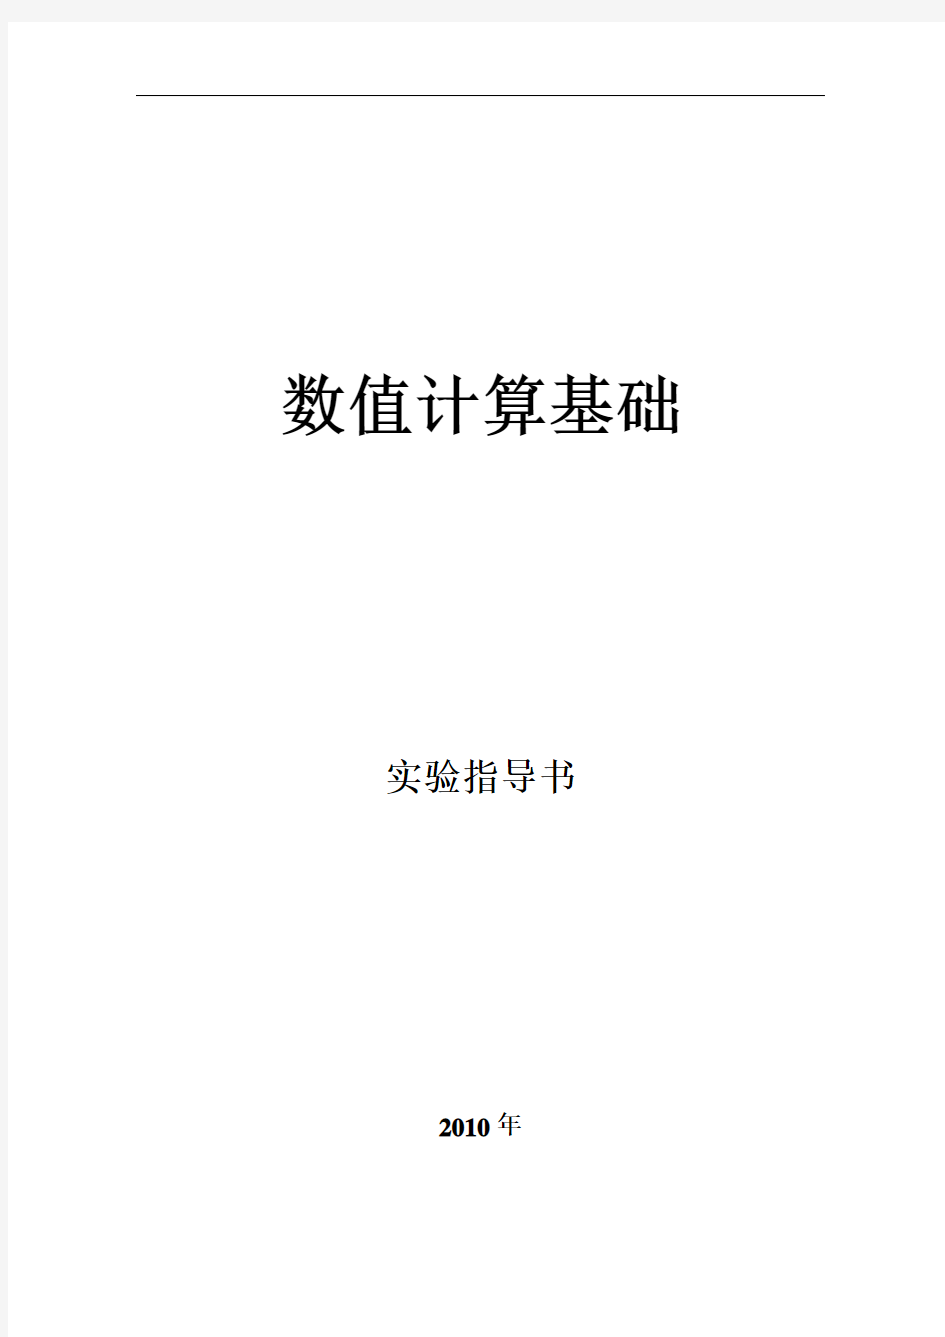 武汉科技大学数值计算基础实验指导书讲解